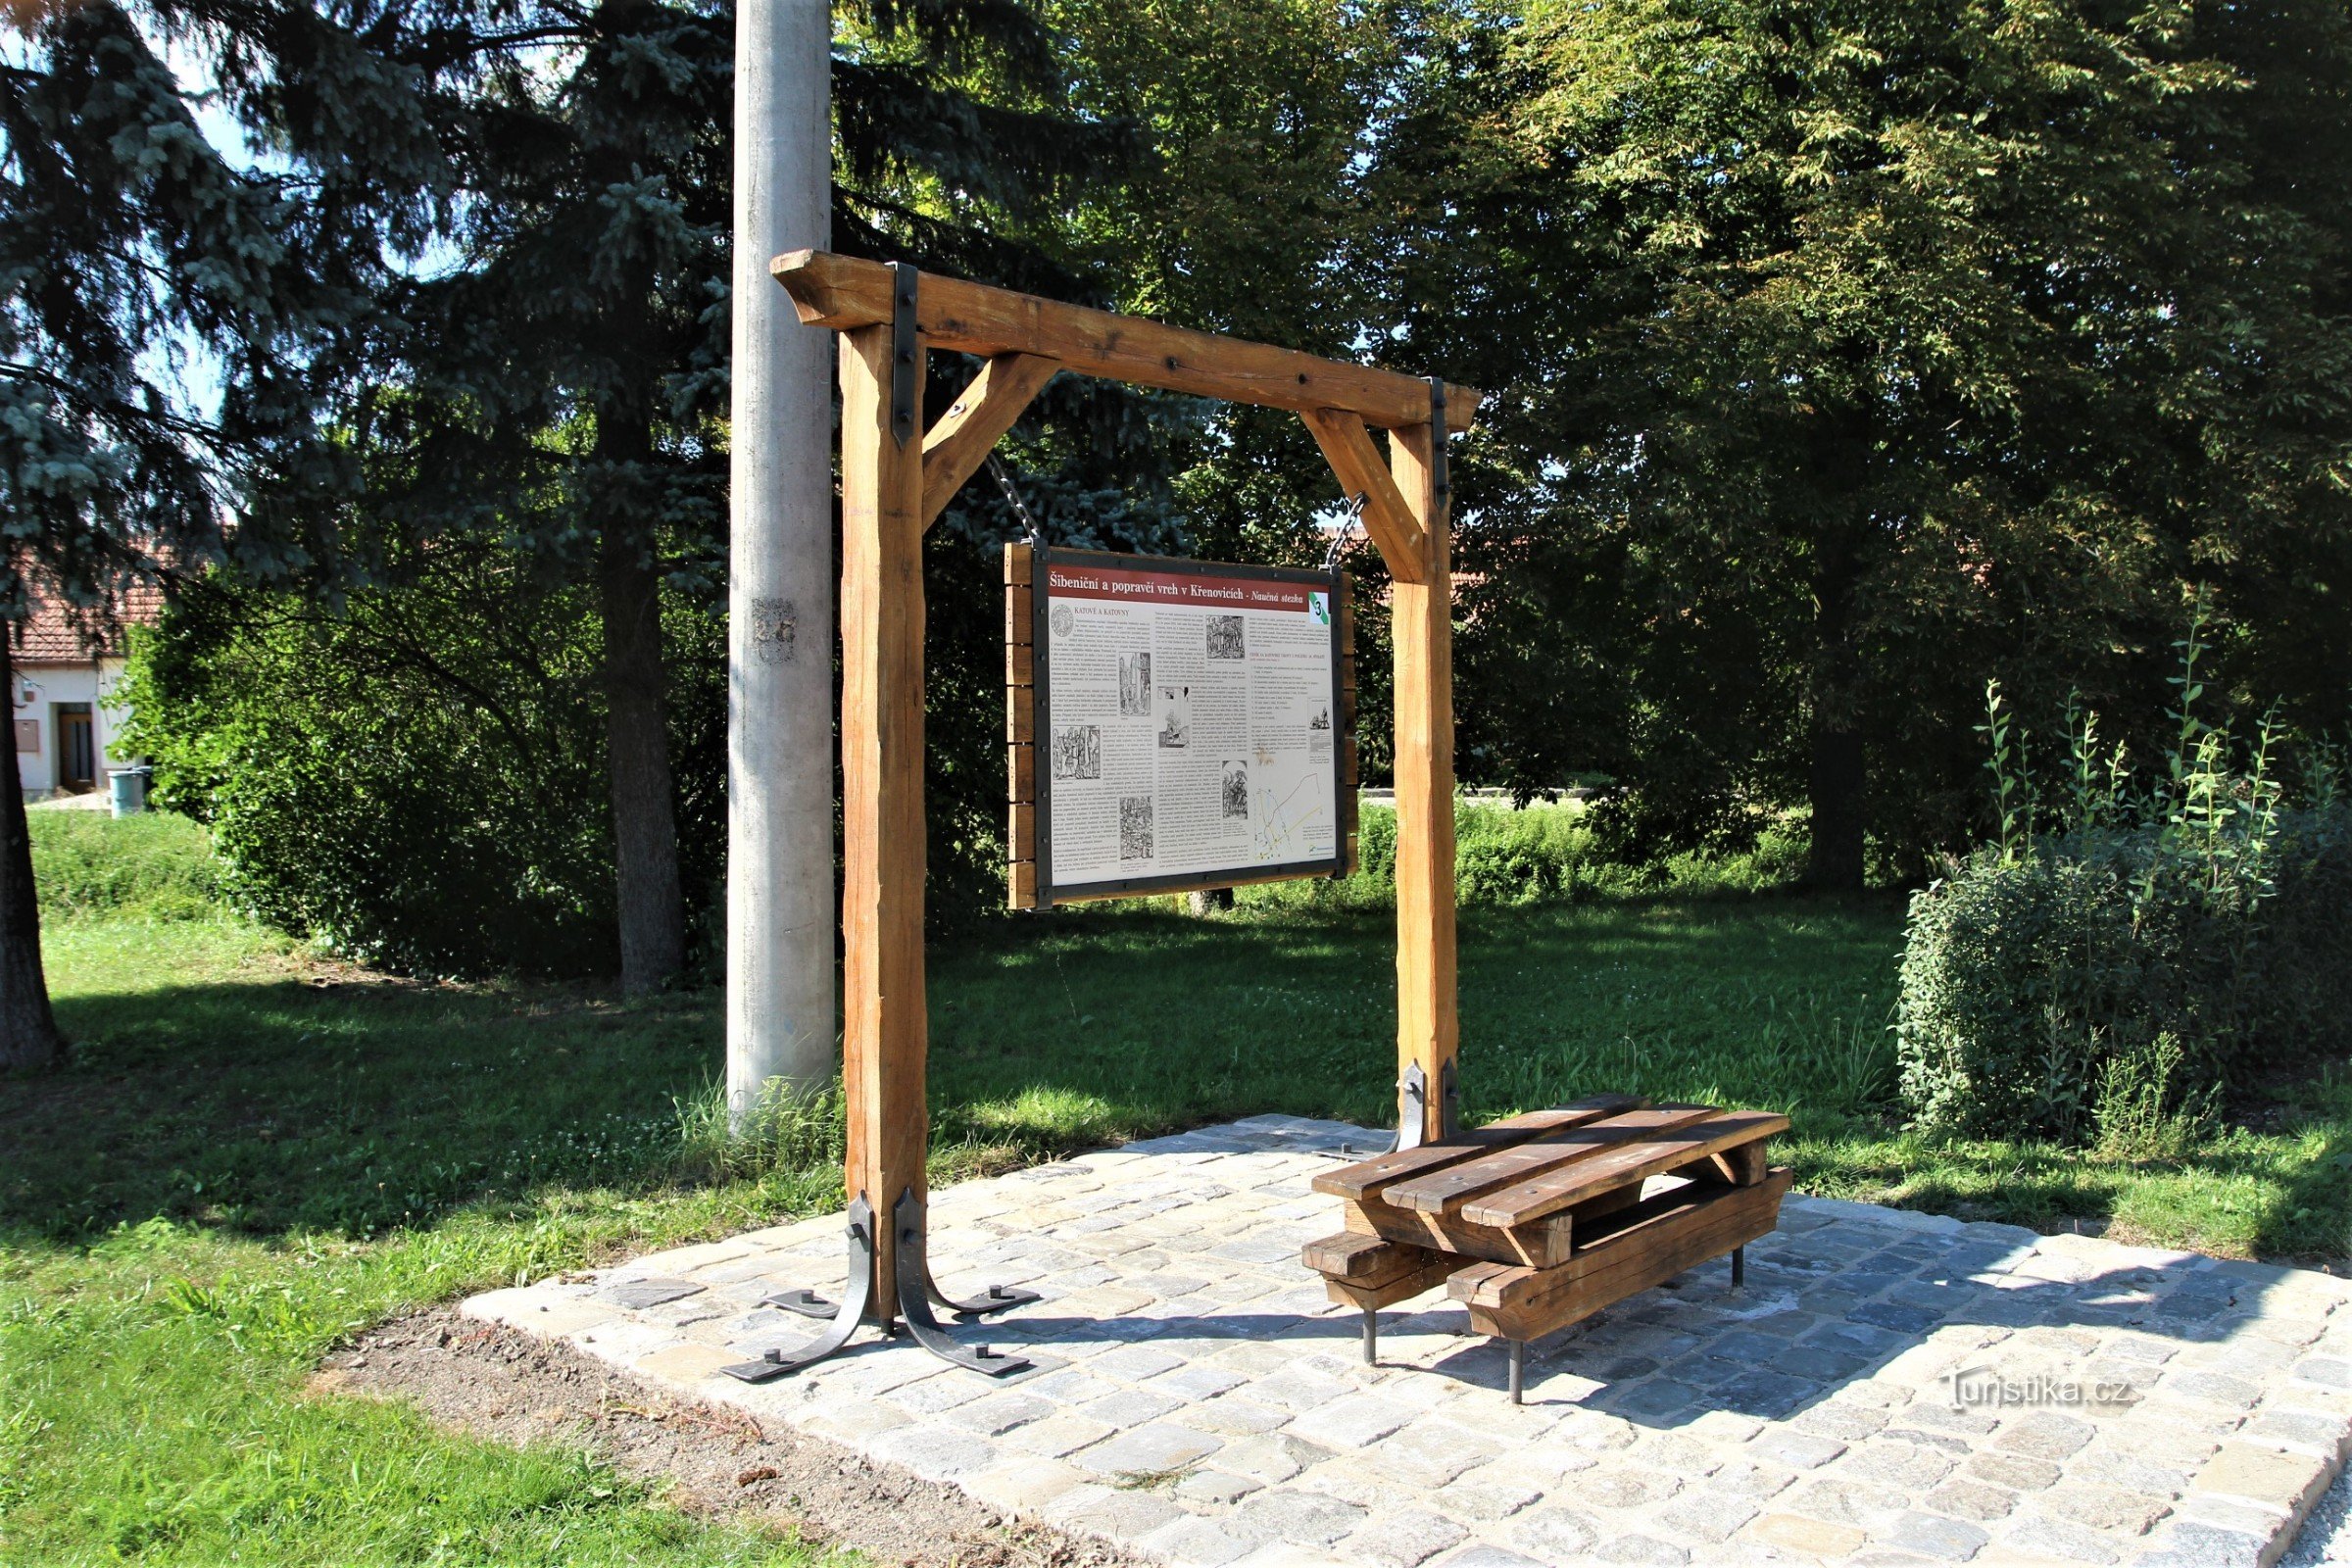 A treia oprire a traseului educațional este la începutul străzii Mlýnská